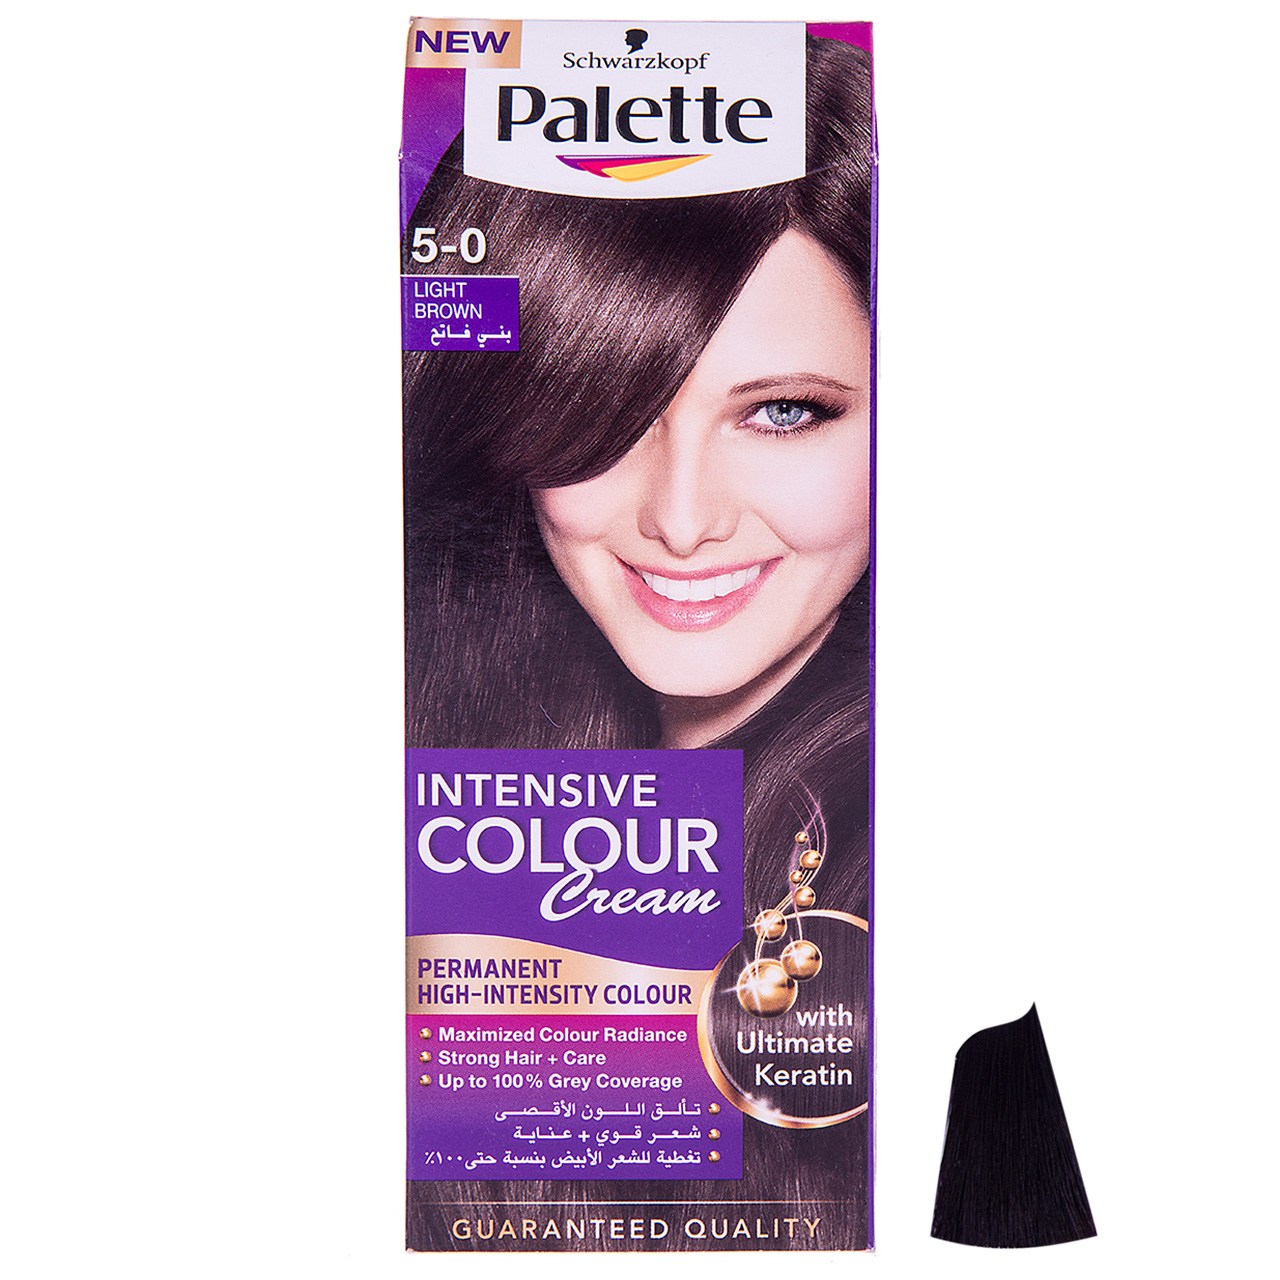 کیت رنگ مو پلت سری Intensive Colour Cream مدل Light Brown شماره 0-5